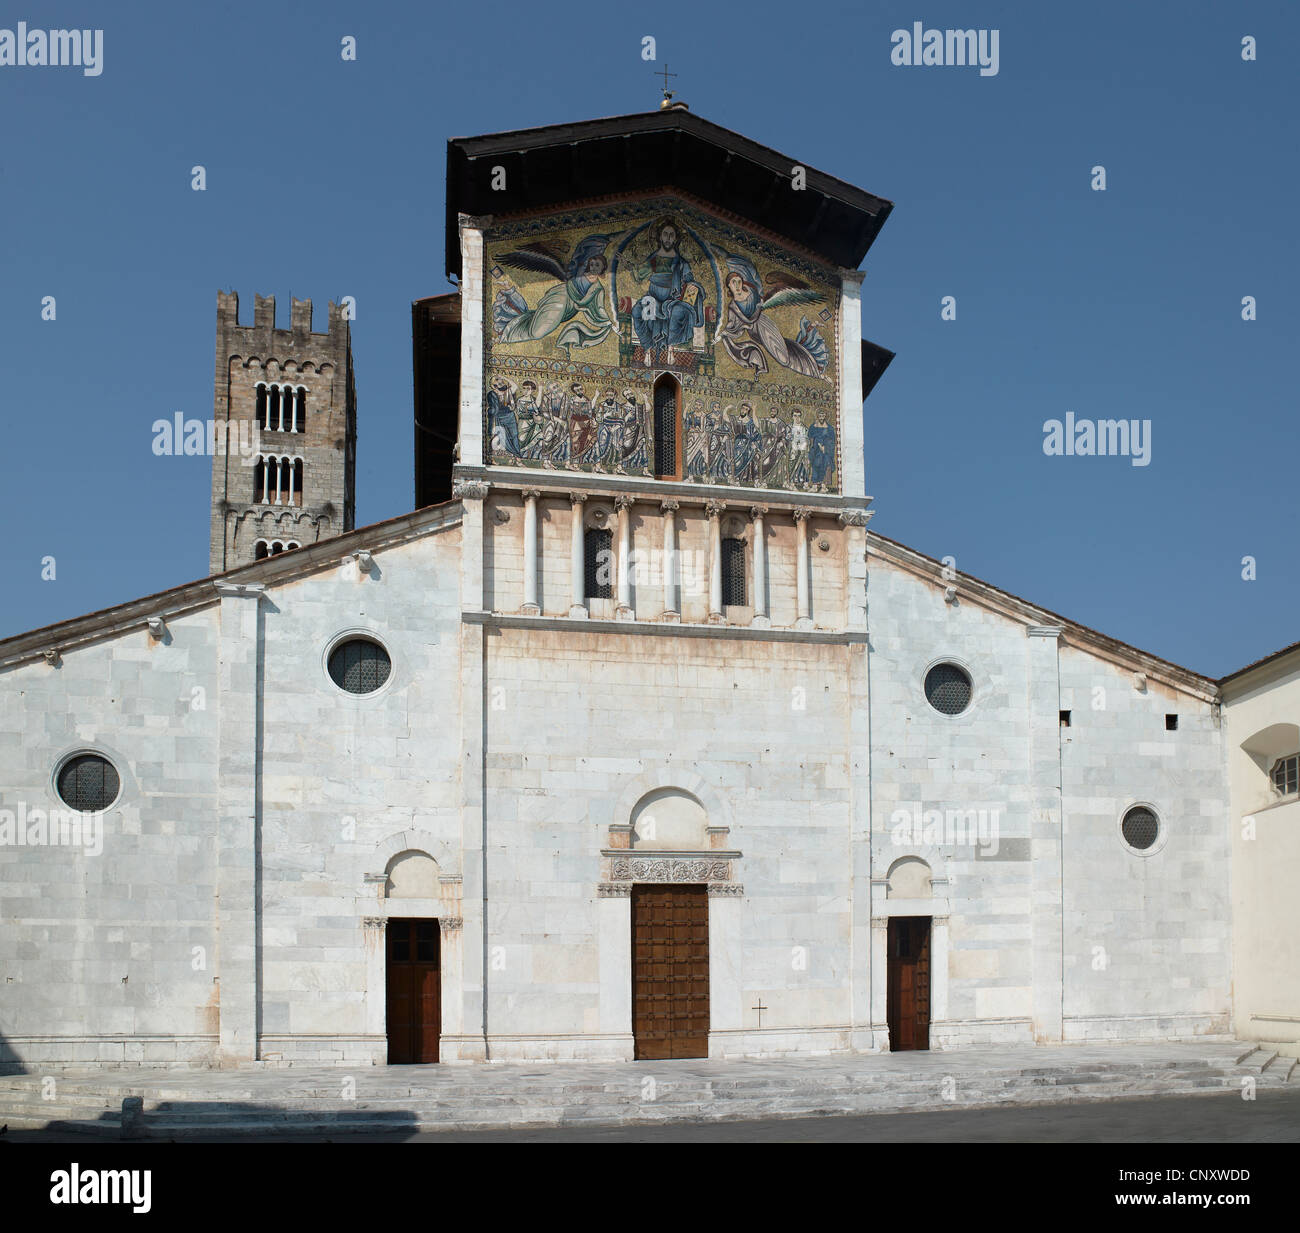 Kirche von San Frediano, Lucca, Italien. Fassade mit Blick auf Süd-Ost, mit 13. Jahrhundert byzantinischen Stil Mosaik von Christi Himmelfahrt, Stockfoto